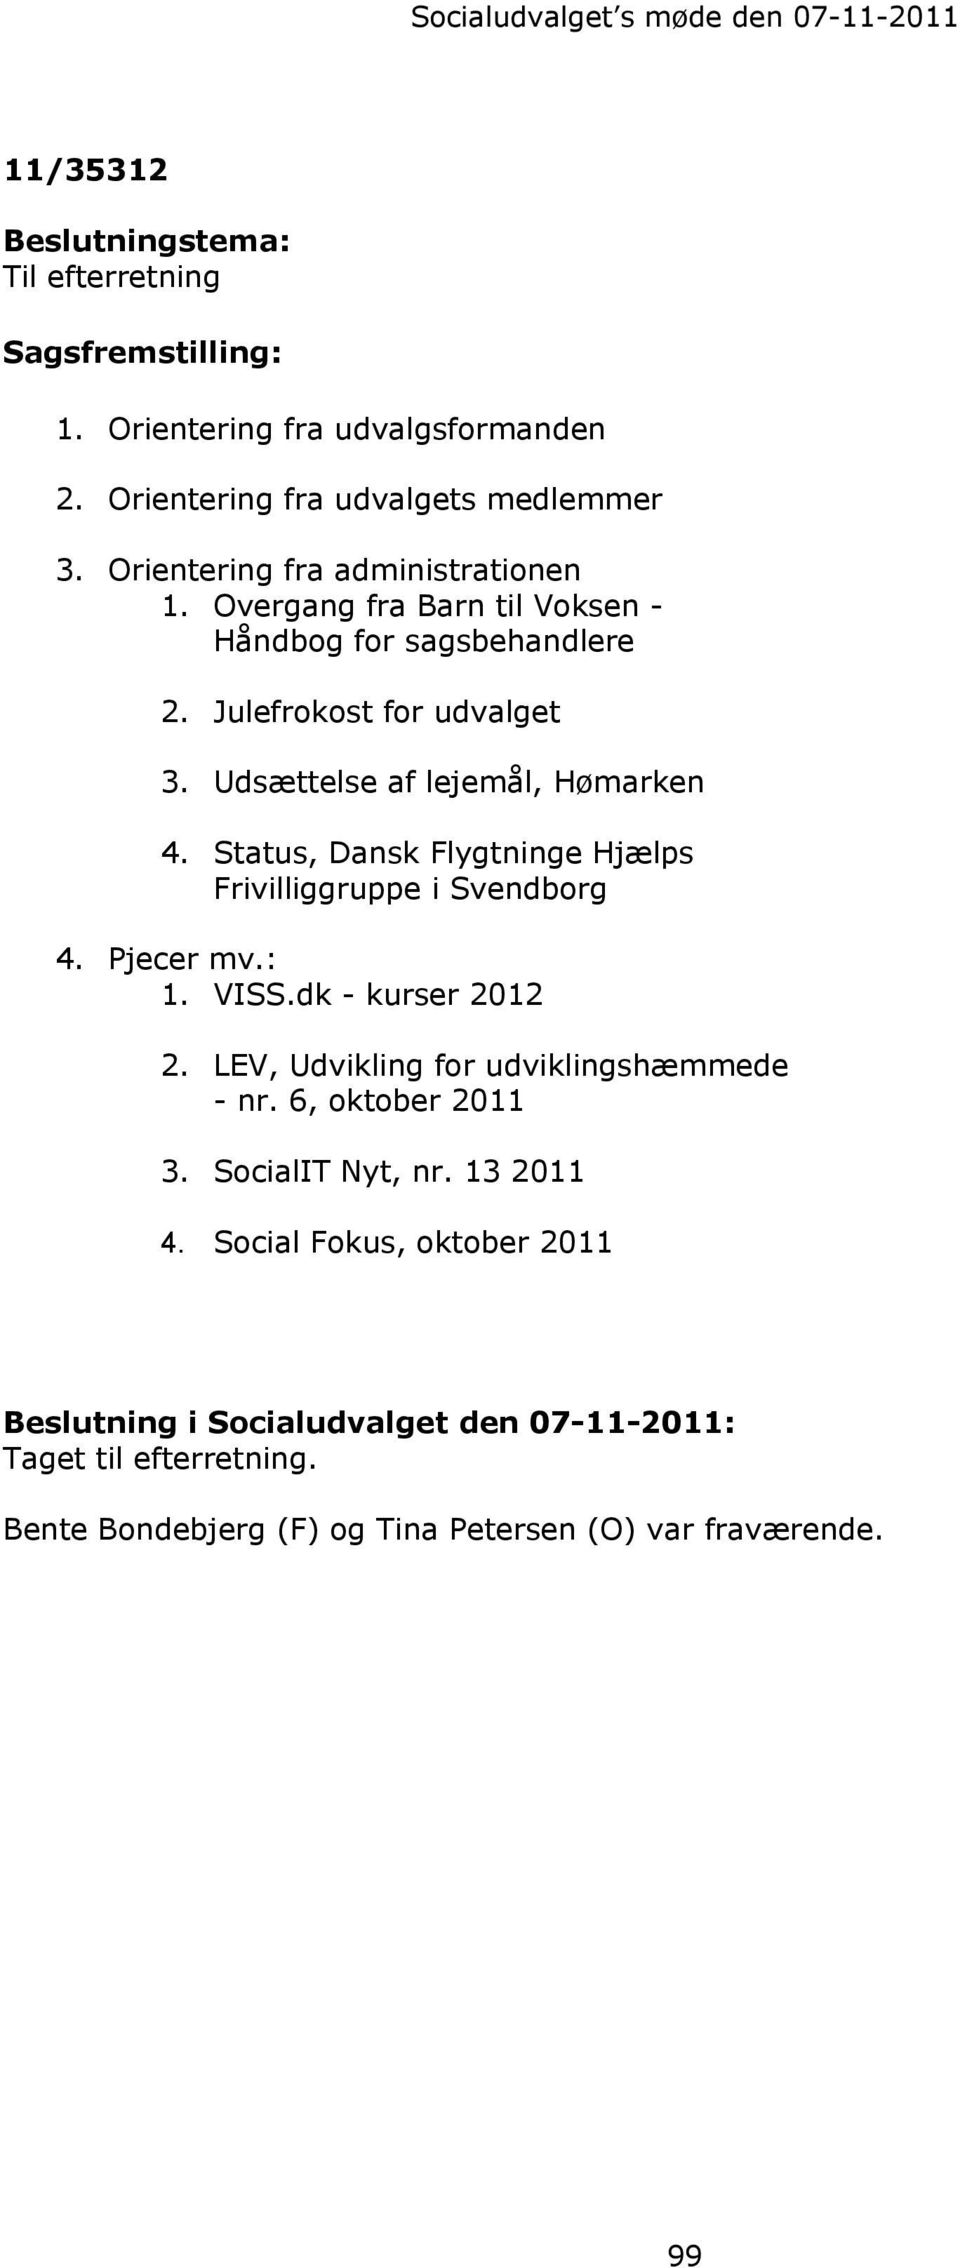 Status, Dansk Flygtninge Hjælps Frivilliggruppe i Svendborg 4. Pjecer mv.: 1. VISS.dk - kurser 2012 2. LEV, Udvikling for udviklingshæmmede - nr. 6, oktober 2011 3.